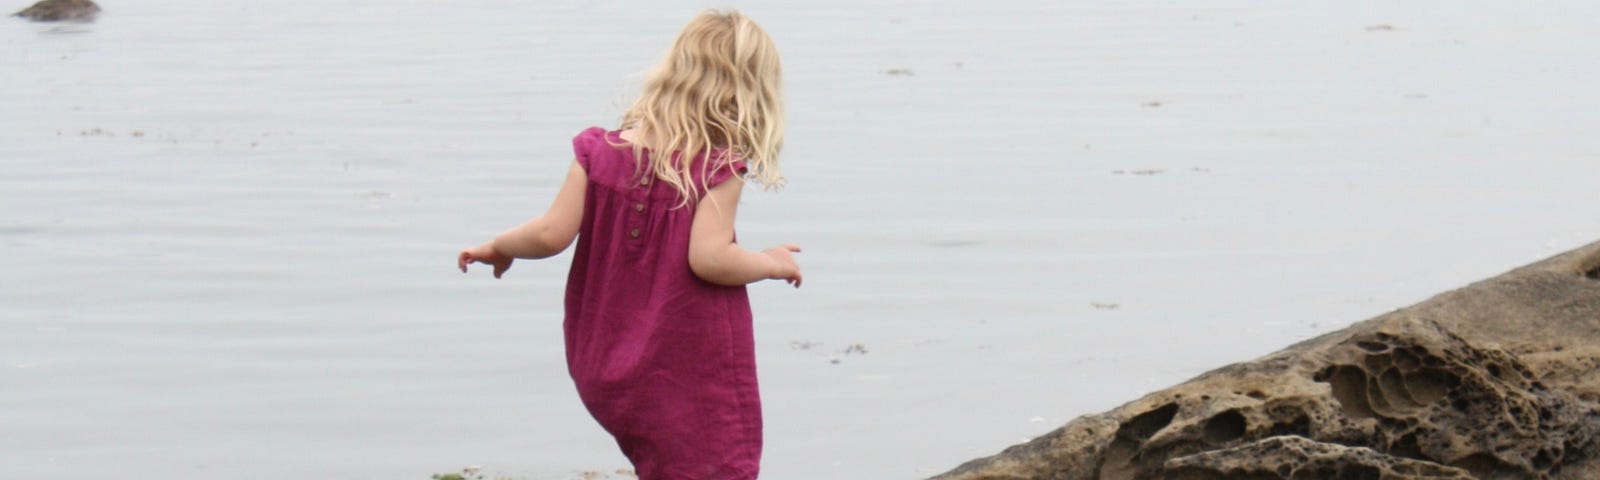 a girl in a purple dress walks on a rocky shoreline